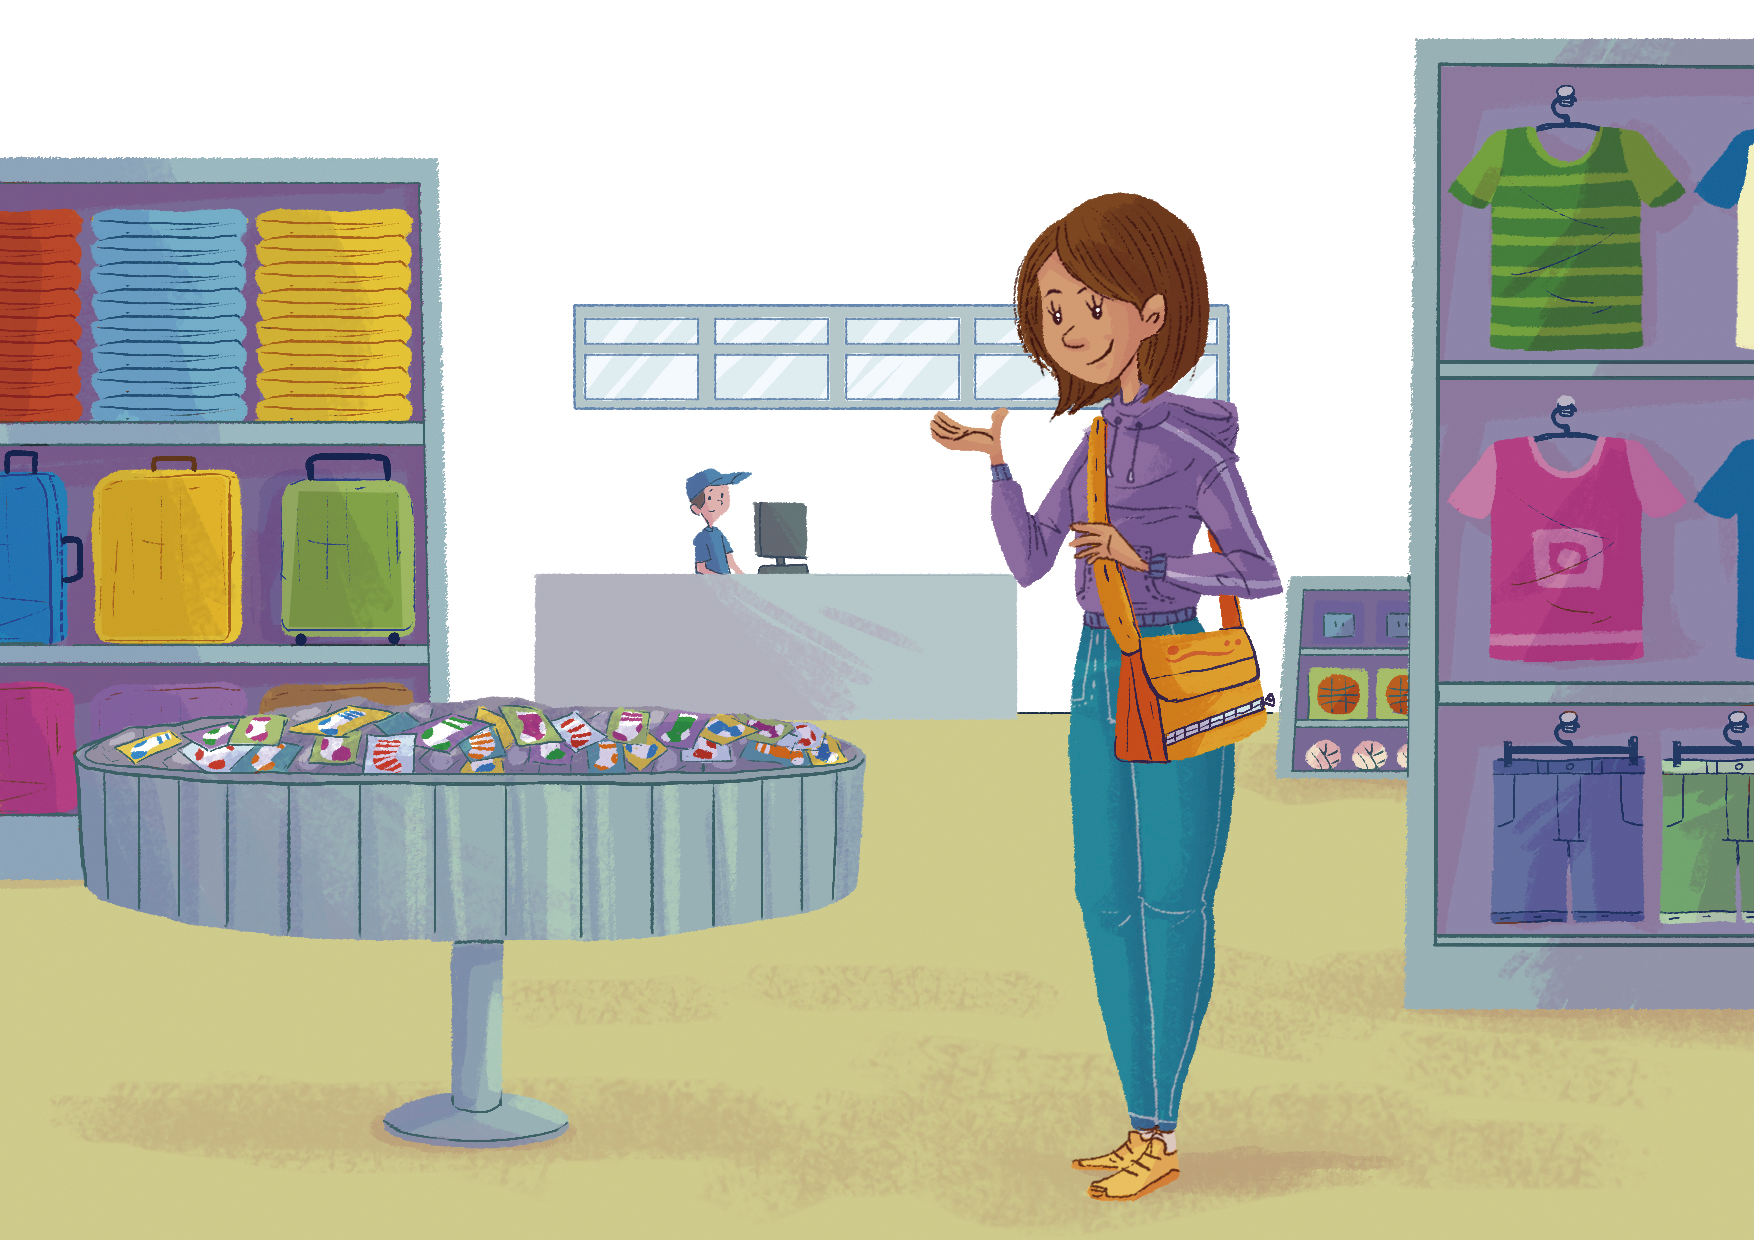 Ilustração. Mulher branca de cabelo castanho, veste blusa roxa e calça azul. Ela está com uma bolsa laranja no ombro e está em pé dentro de uma loja de roupas. Ao fundo uma pessoa atrás de um balcão. Dos lados, prateleiras com roupas.